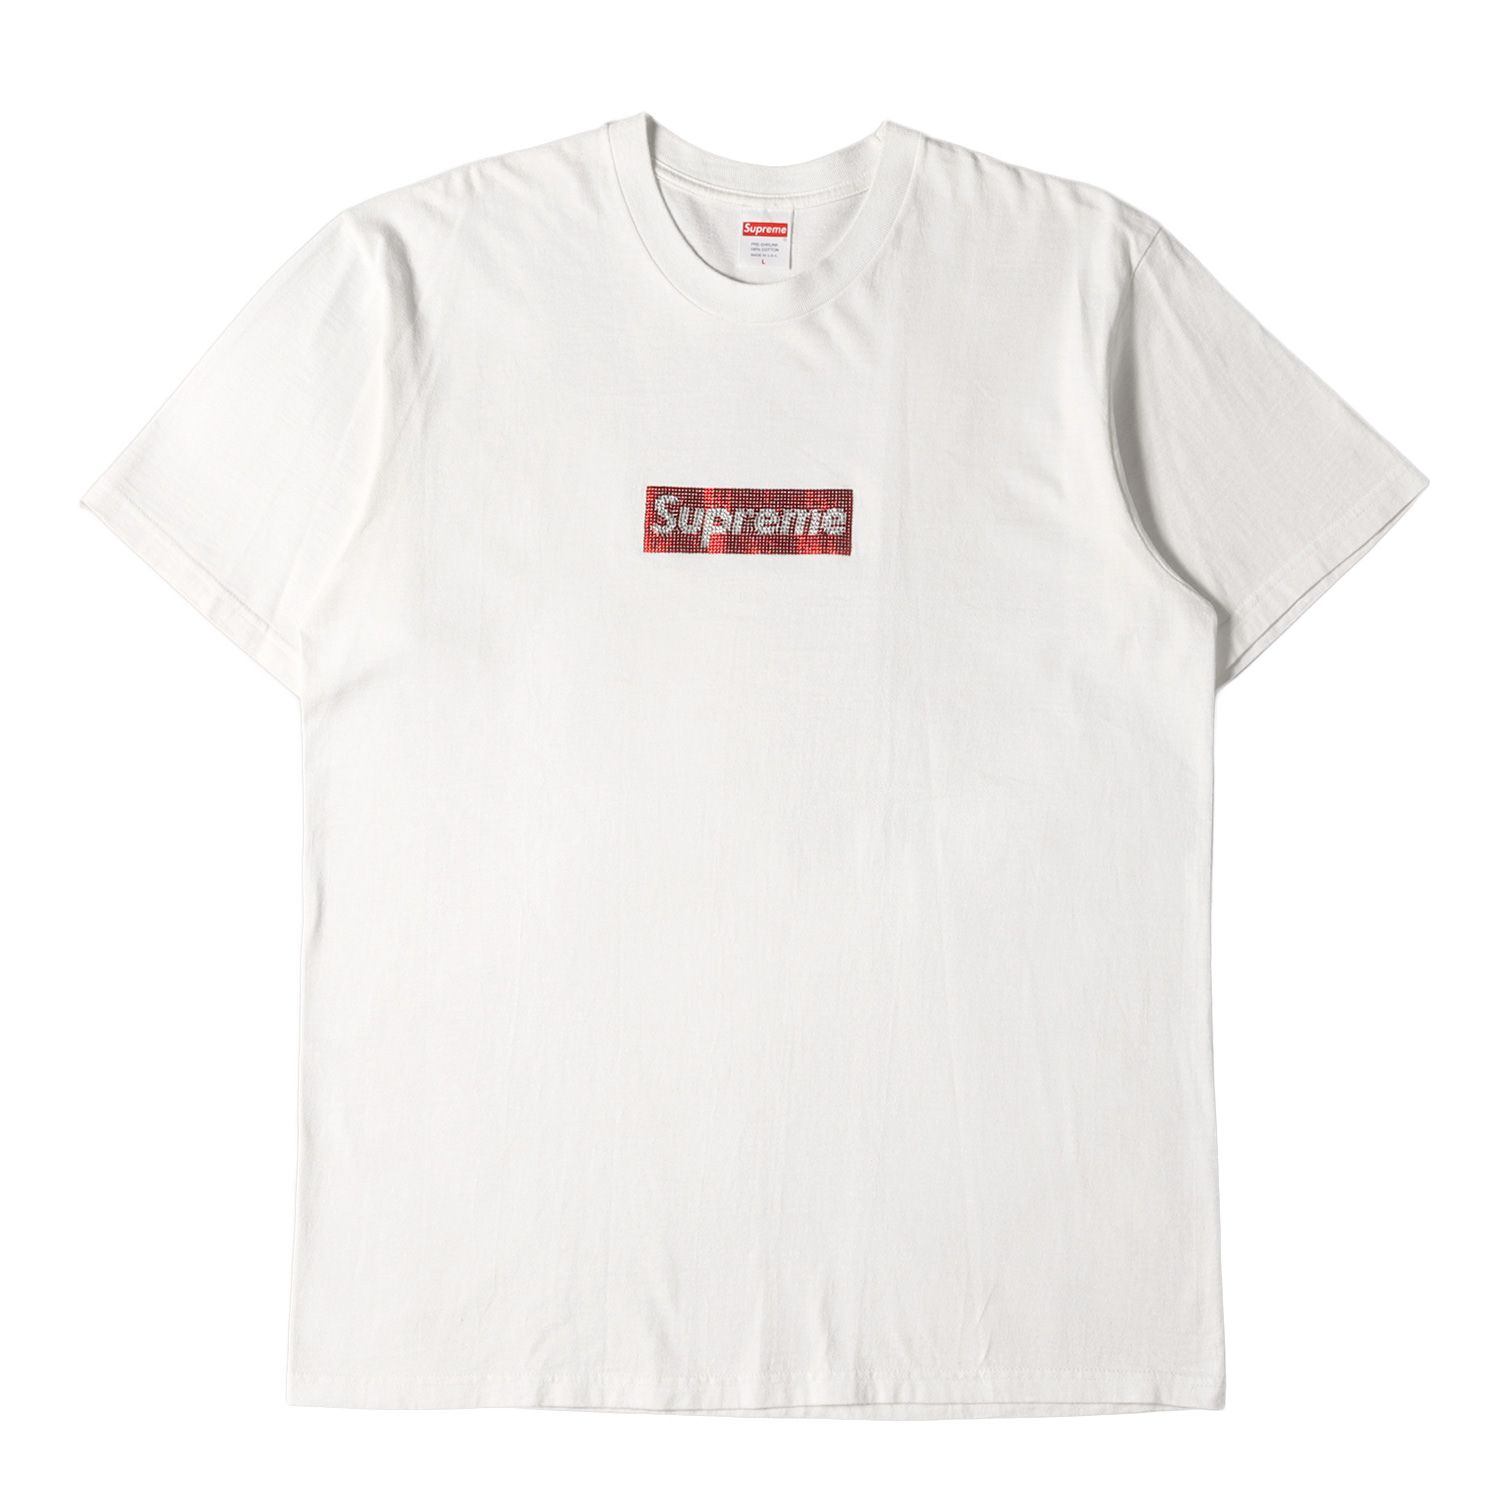 美品 Supreme シュプリーム Tシャツ サイズ:L 25周年記念 スワロフスキー ボックスロゴ クルーネック 半袖 Tシャツ Swarovski  Box Logo Tee 19SS ホワイト 白 トップス カットソー ブランド